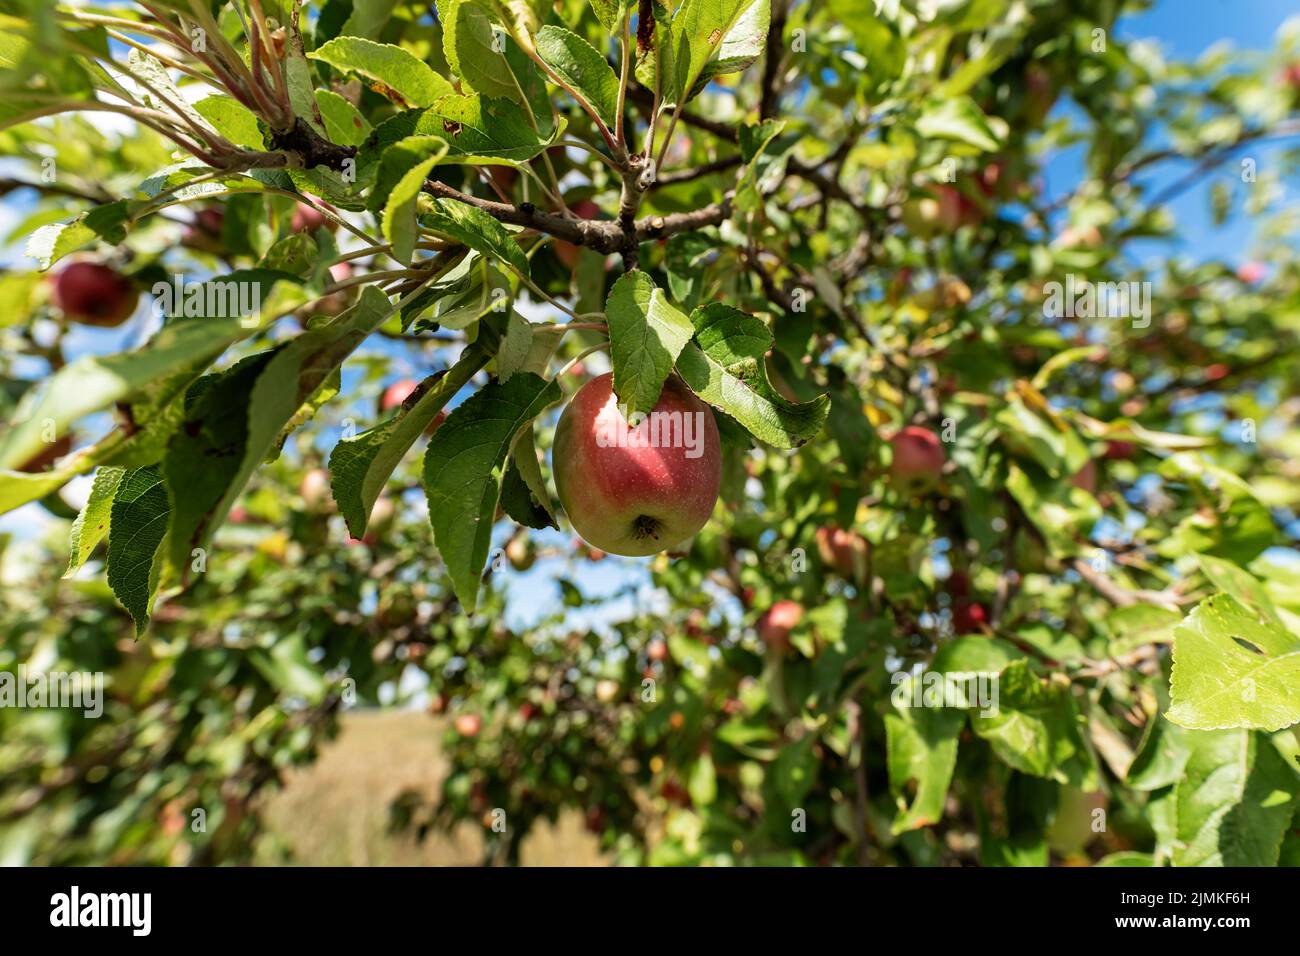 Apples on an apple tree Stock Photo